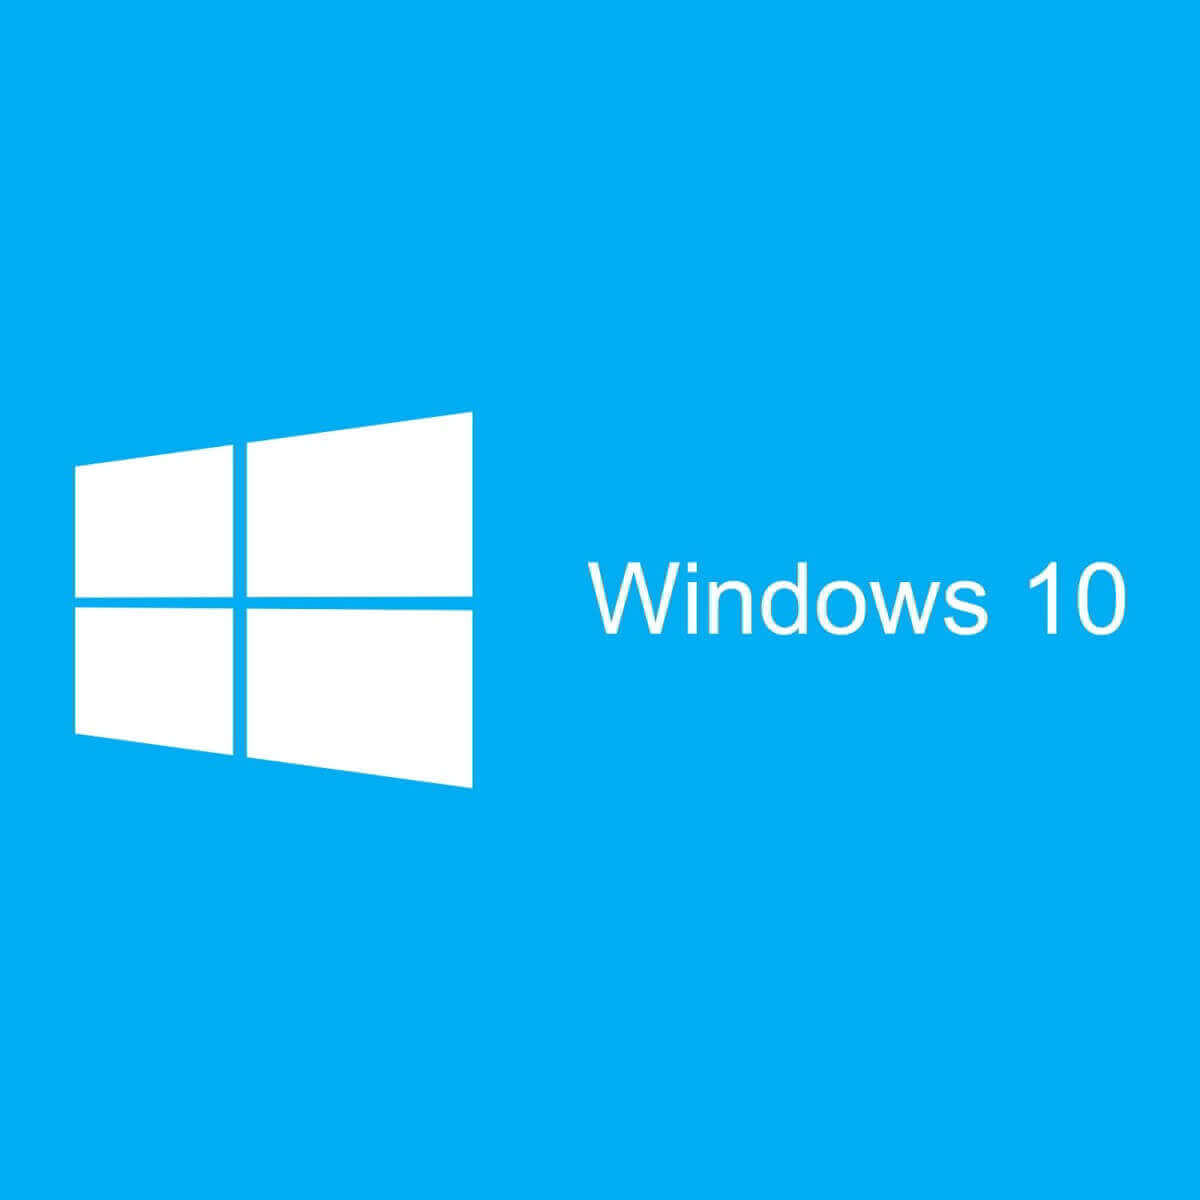 Aquí tienes 8 soluciones sencillas para arreglar el error 0xc000000185 de Windows 10